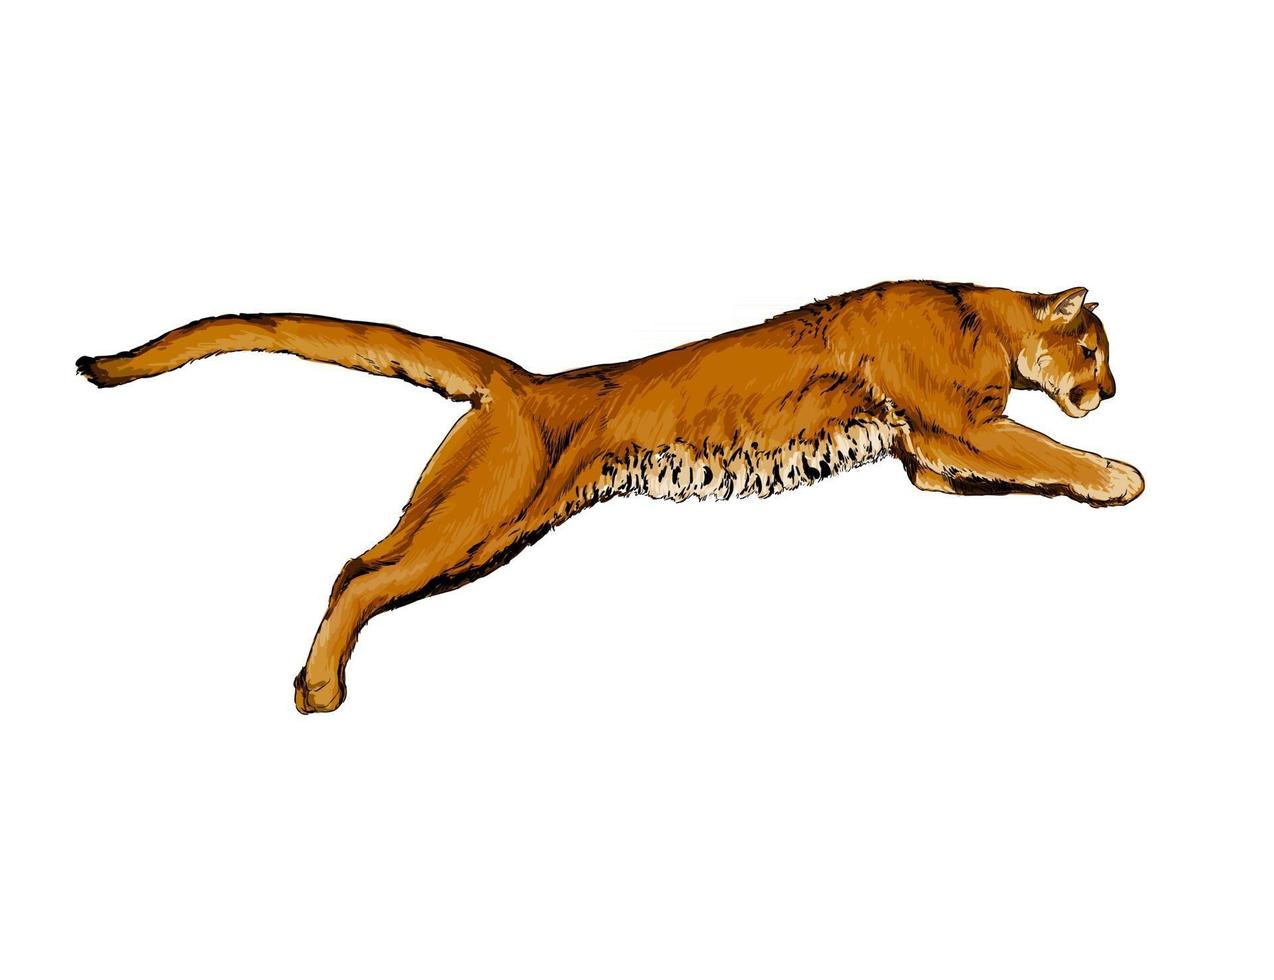 Puma, Puma aus einem Spritzer Aquarell, farbige Zeichnung, realistisch. Vektor-Illustration von Farben vektor